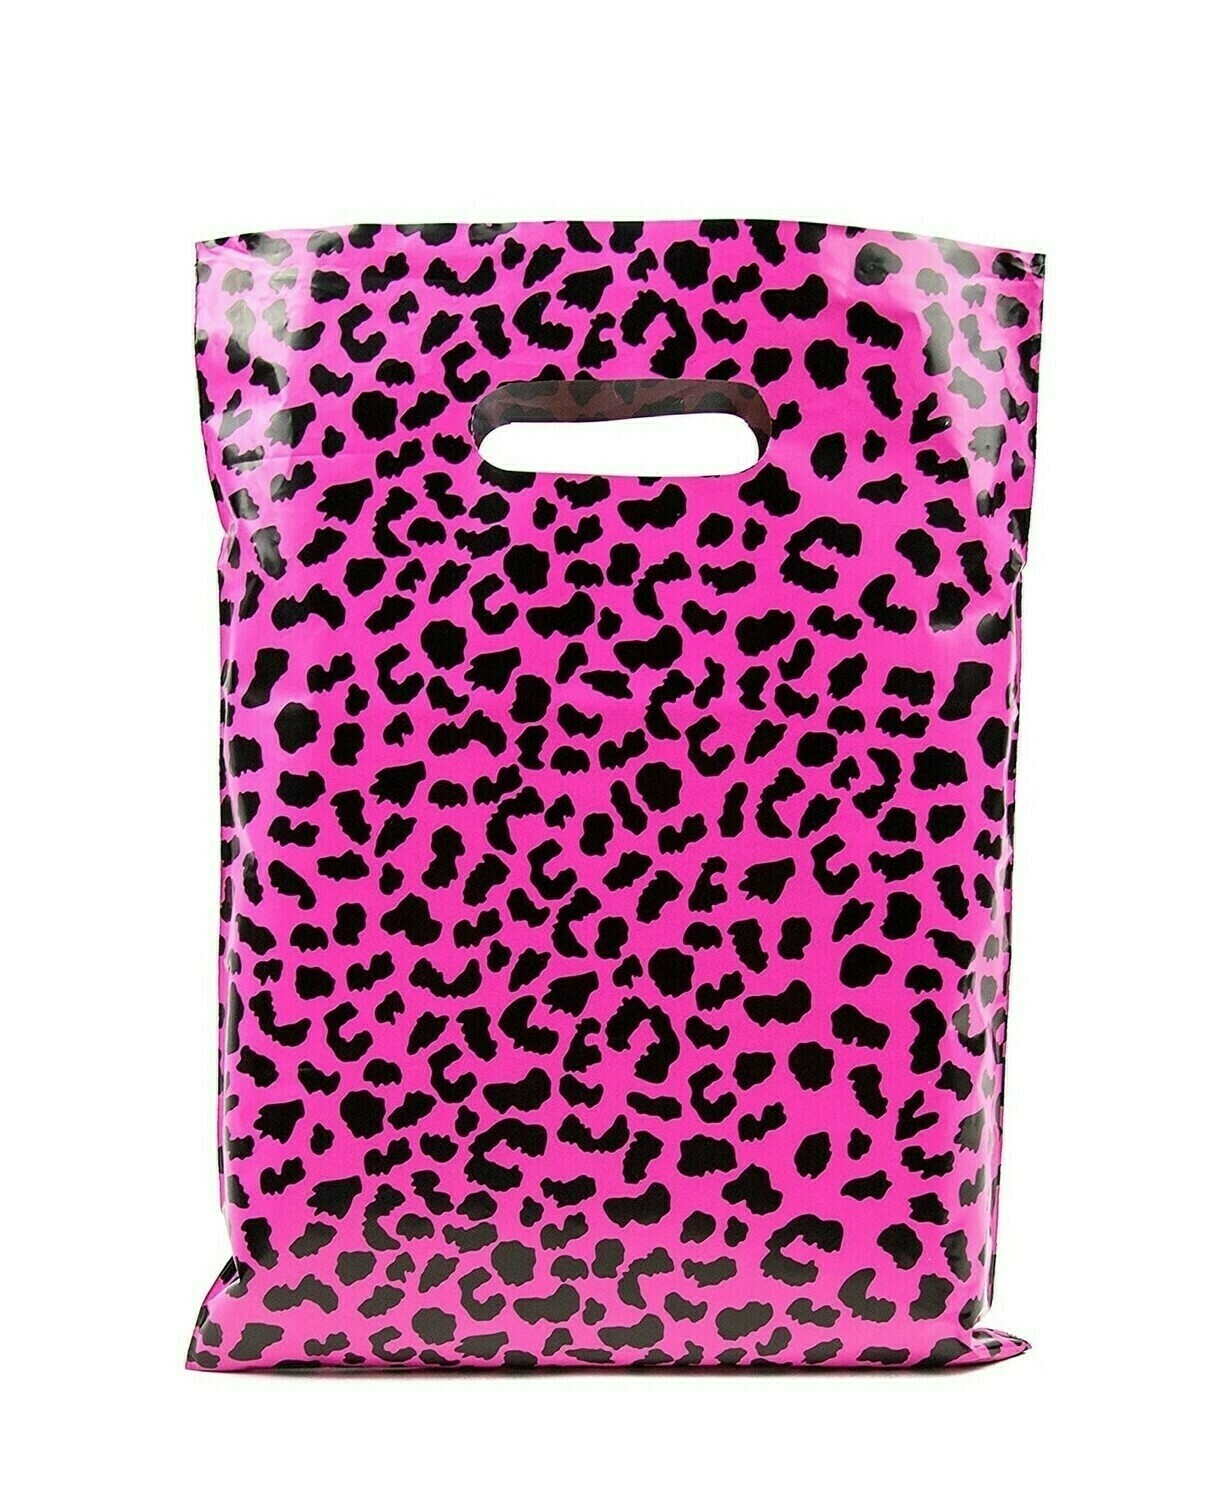 Merchandise Bags 12x15 - Hot Pink Cheetah